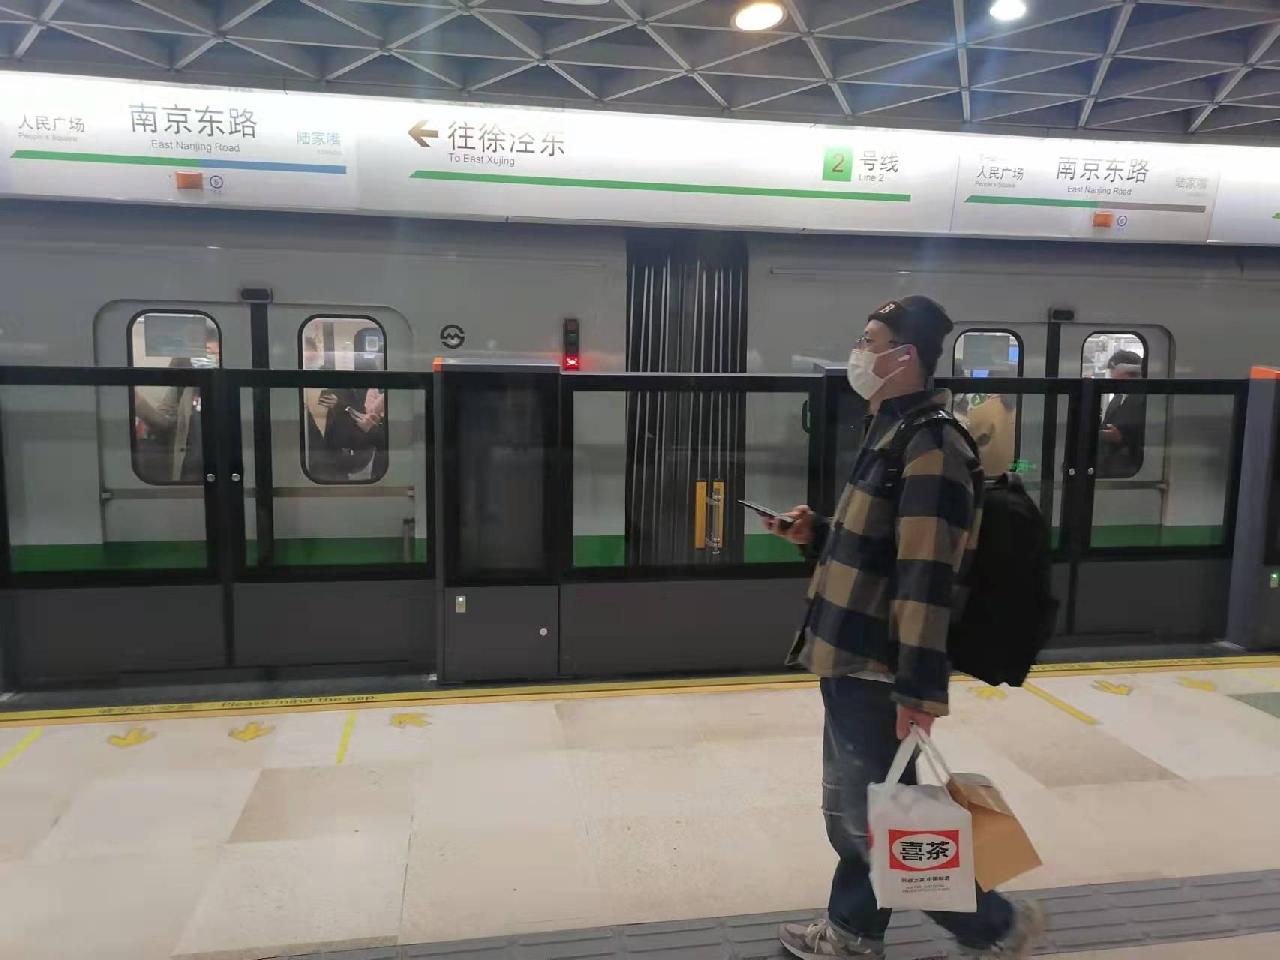 【携程攻略】广州中山纪念堂景点,就在地铁中山纪念堂站，门口就是公车站和地铁站，交通很方便，是广州…